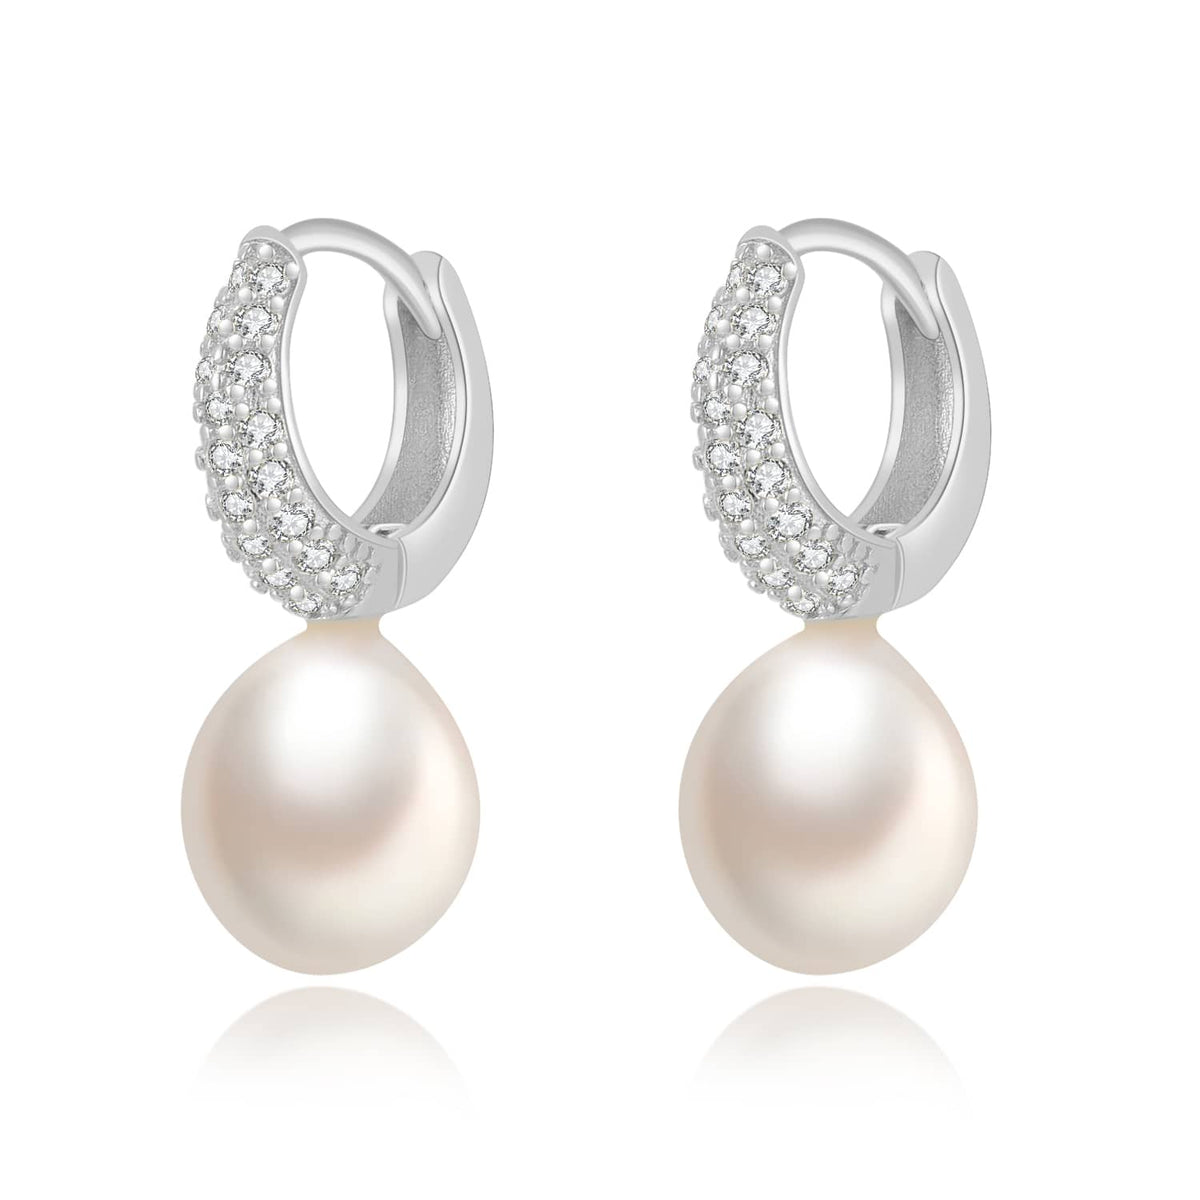 Pendientes de plata arito con circonitas y una perla